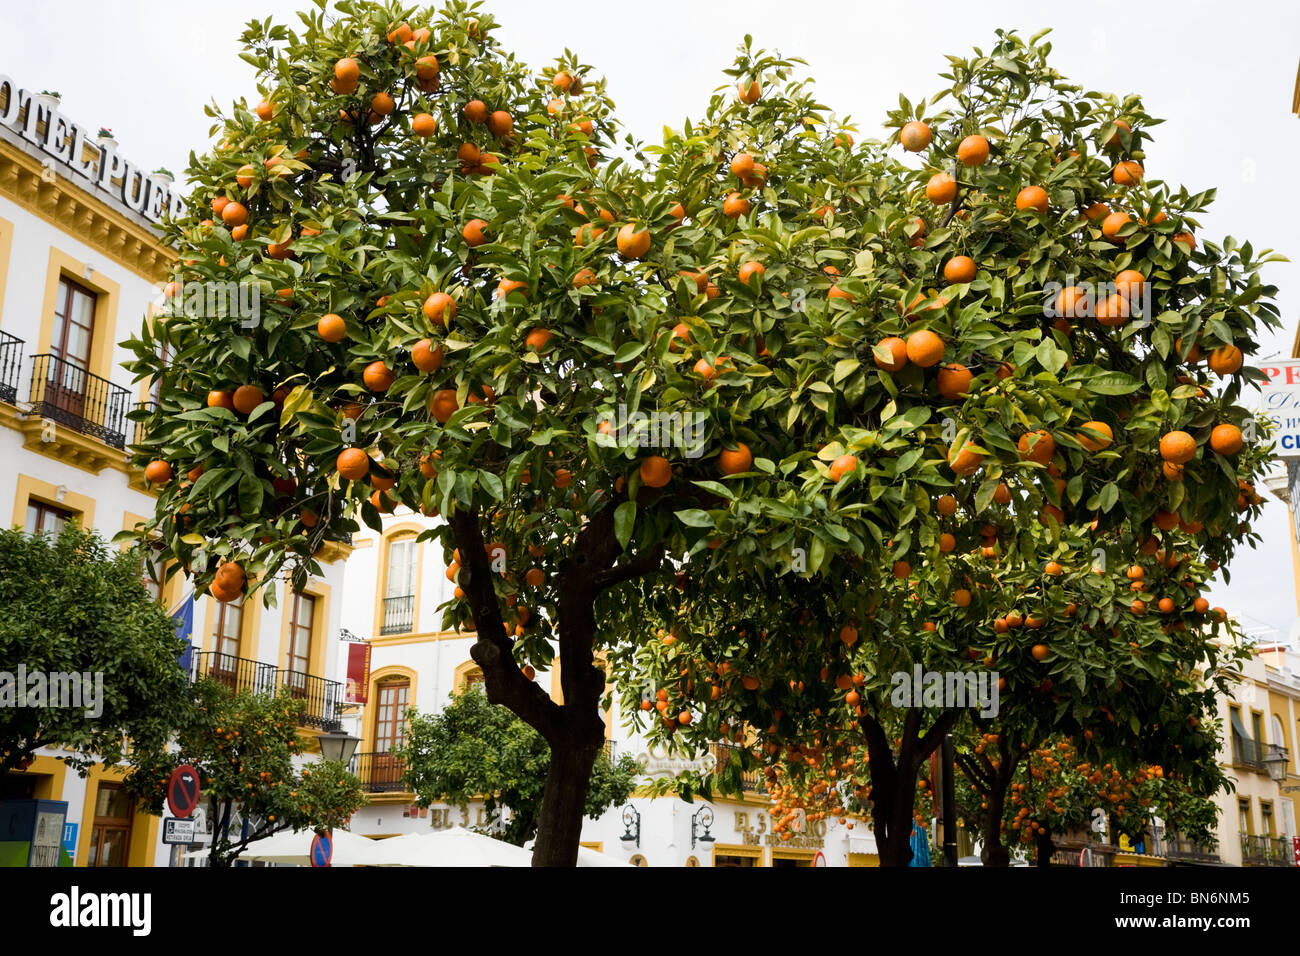 La fructification des fruits orange arbre / arbres croissant sur la rue de Séville / Sevilla, Espagne. Banque D'Images